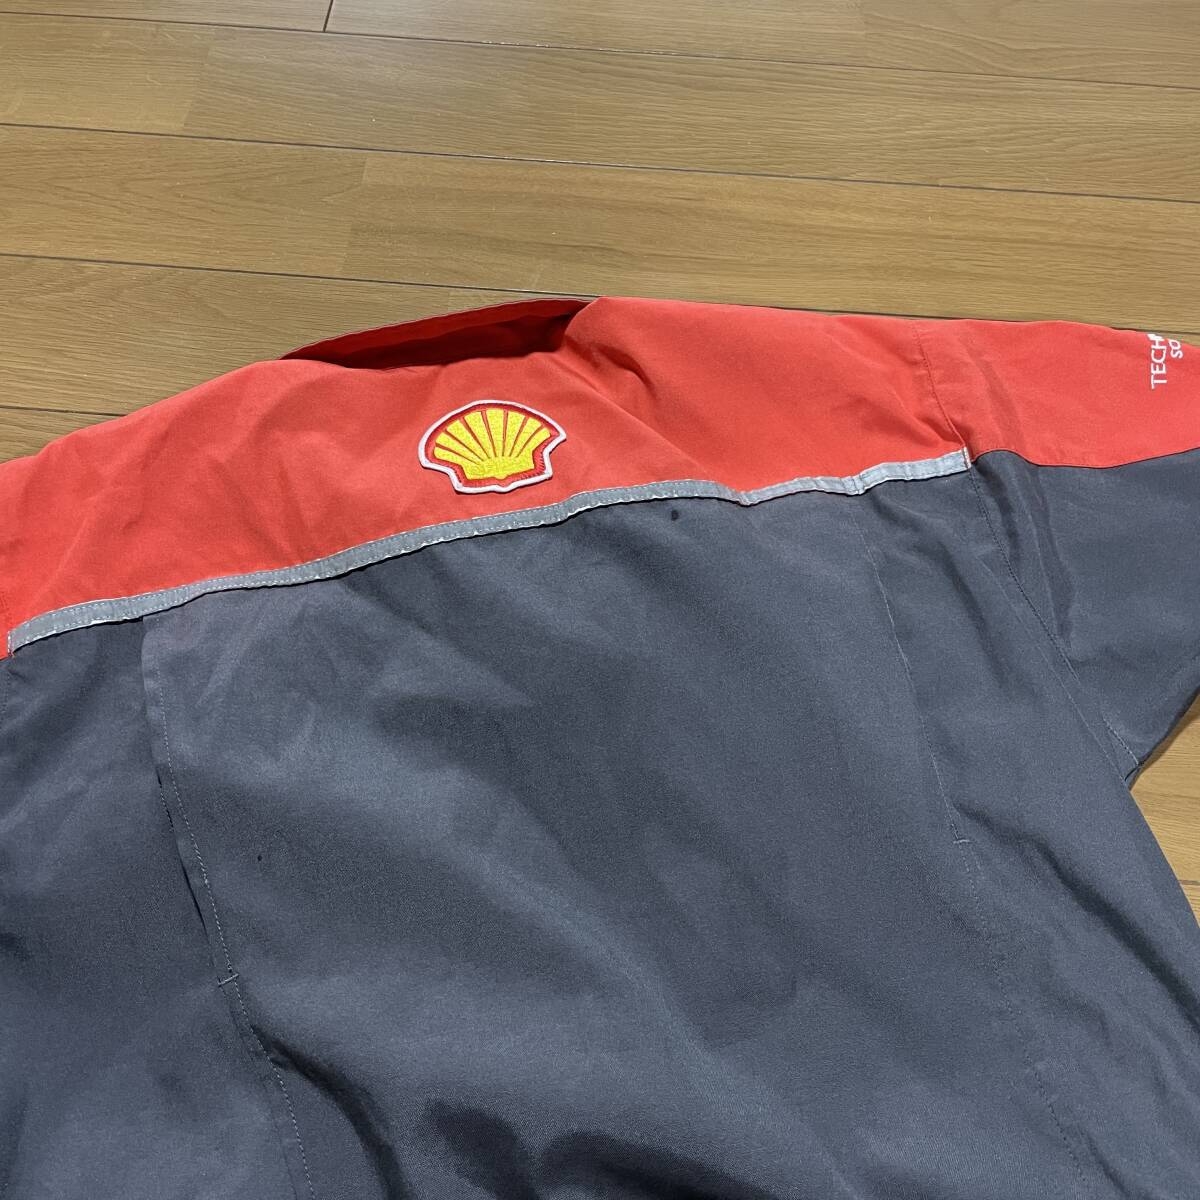 G-13 Shell( Rising солнечный ) размер L! комбинезон рабочая одежда не продается 